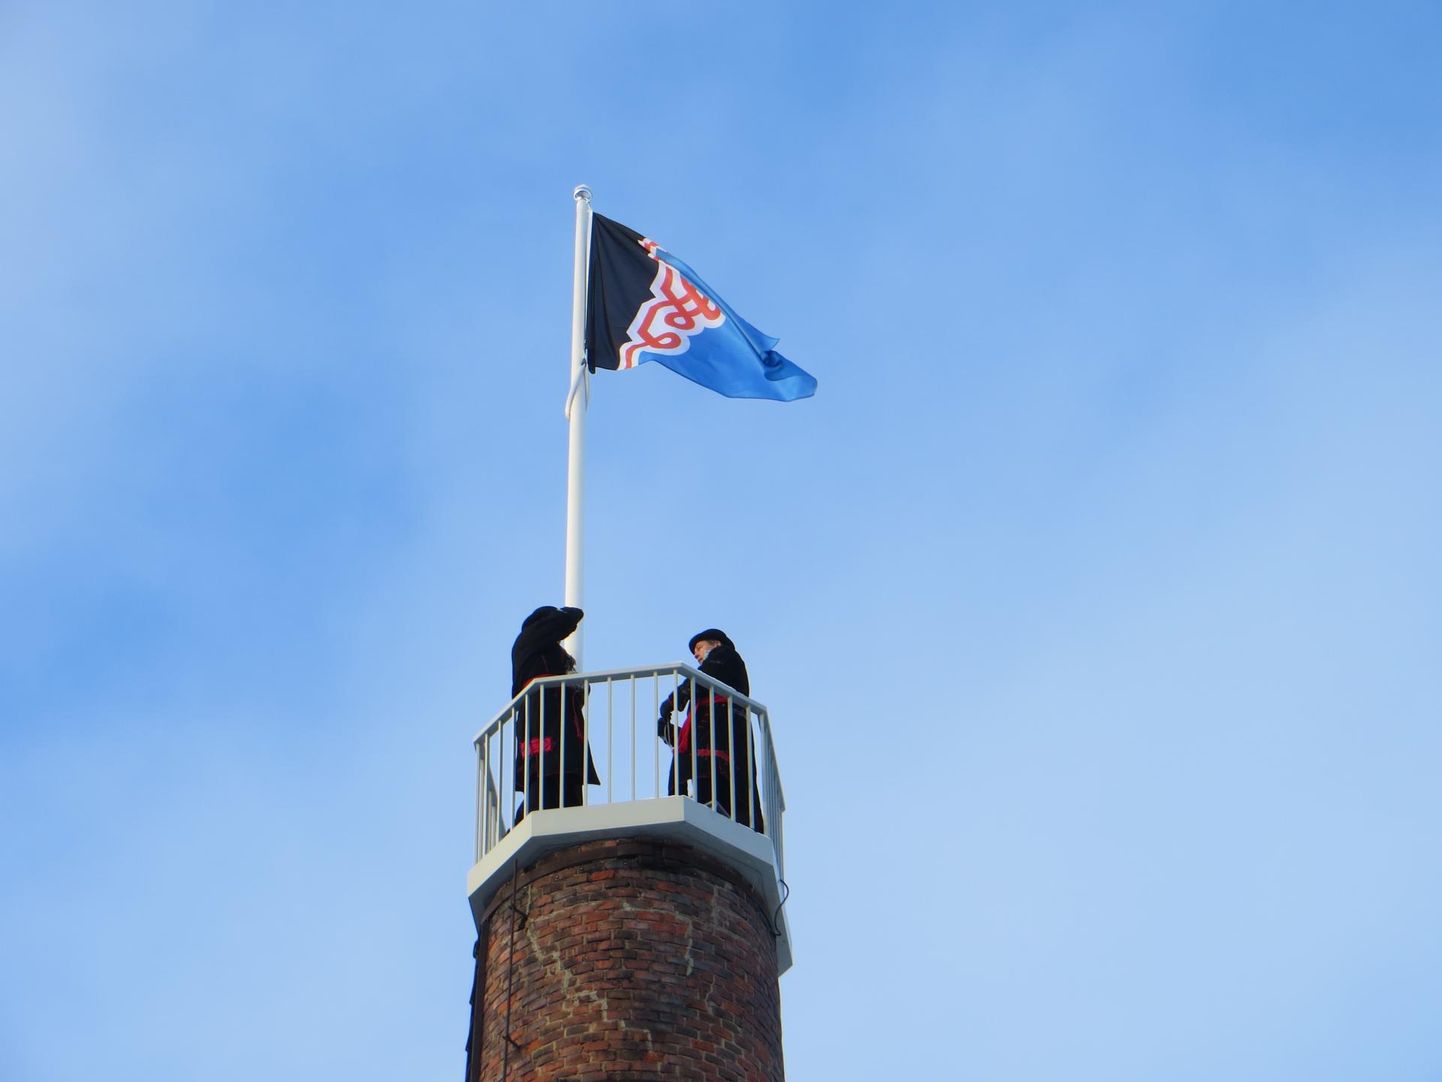 Mulgi lipp tõmmates piduliguld Mustla pääl Mulgi Majaka otsan masti 12. oktoobrel päevätõusu aal kell 7.43.